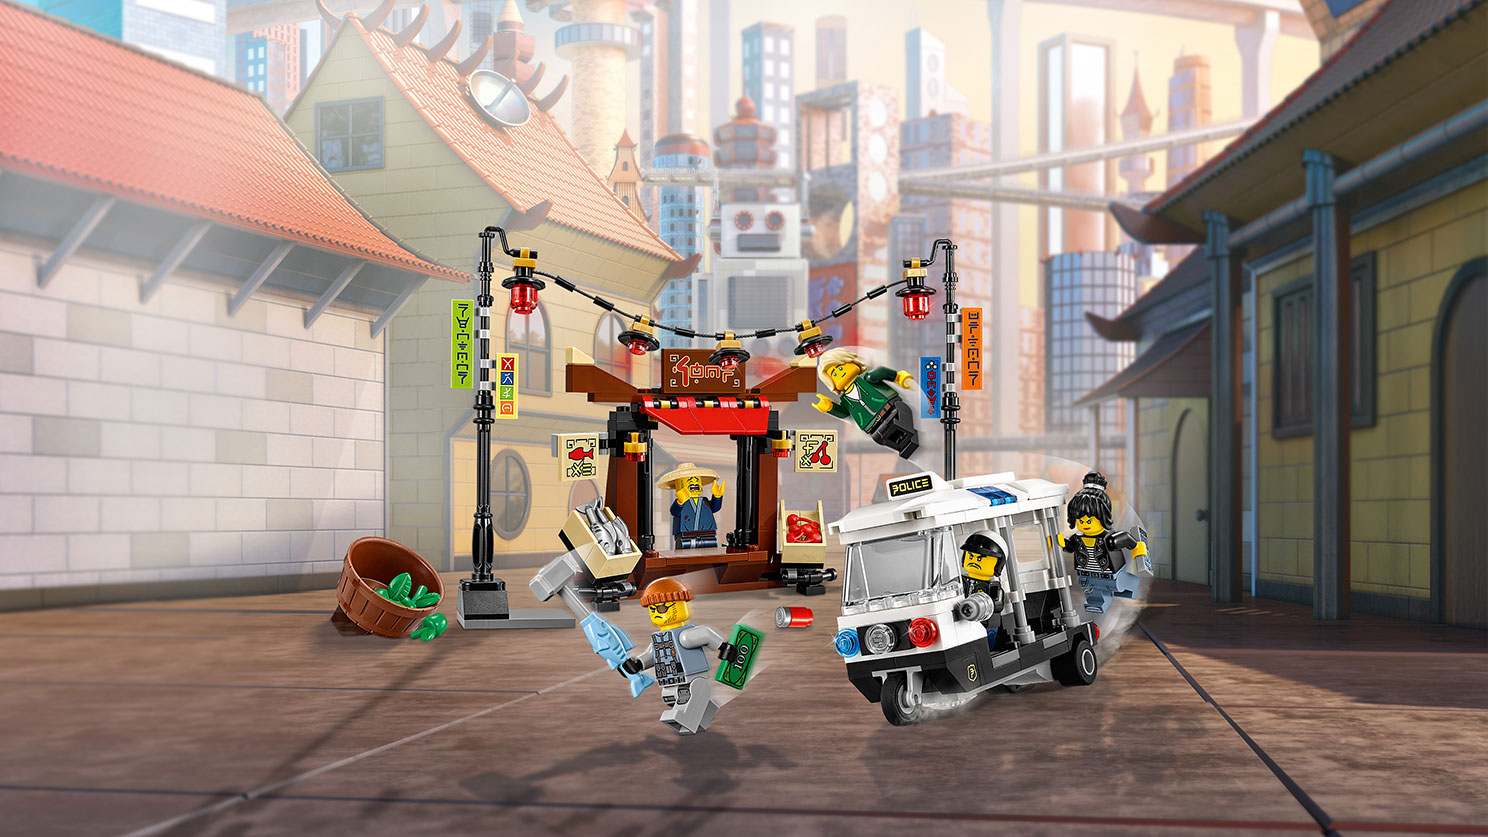 Lego Ninjago. Ограбление киоска в Ниндзяго Сити  